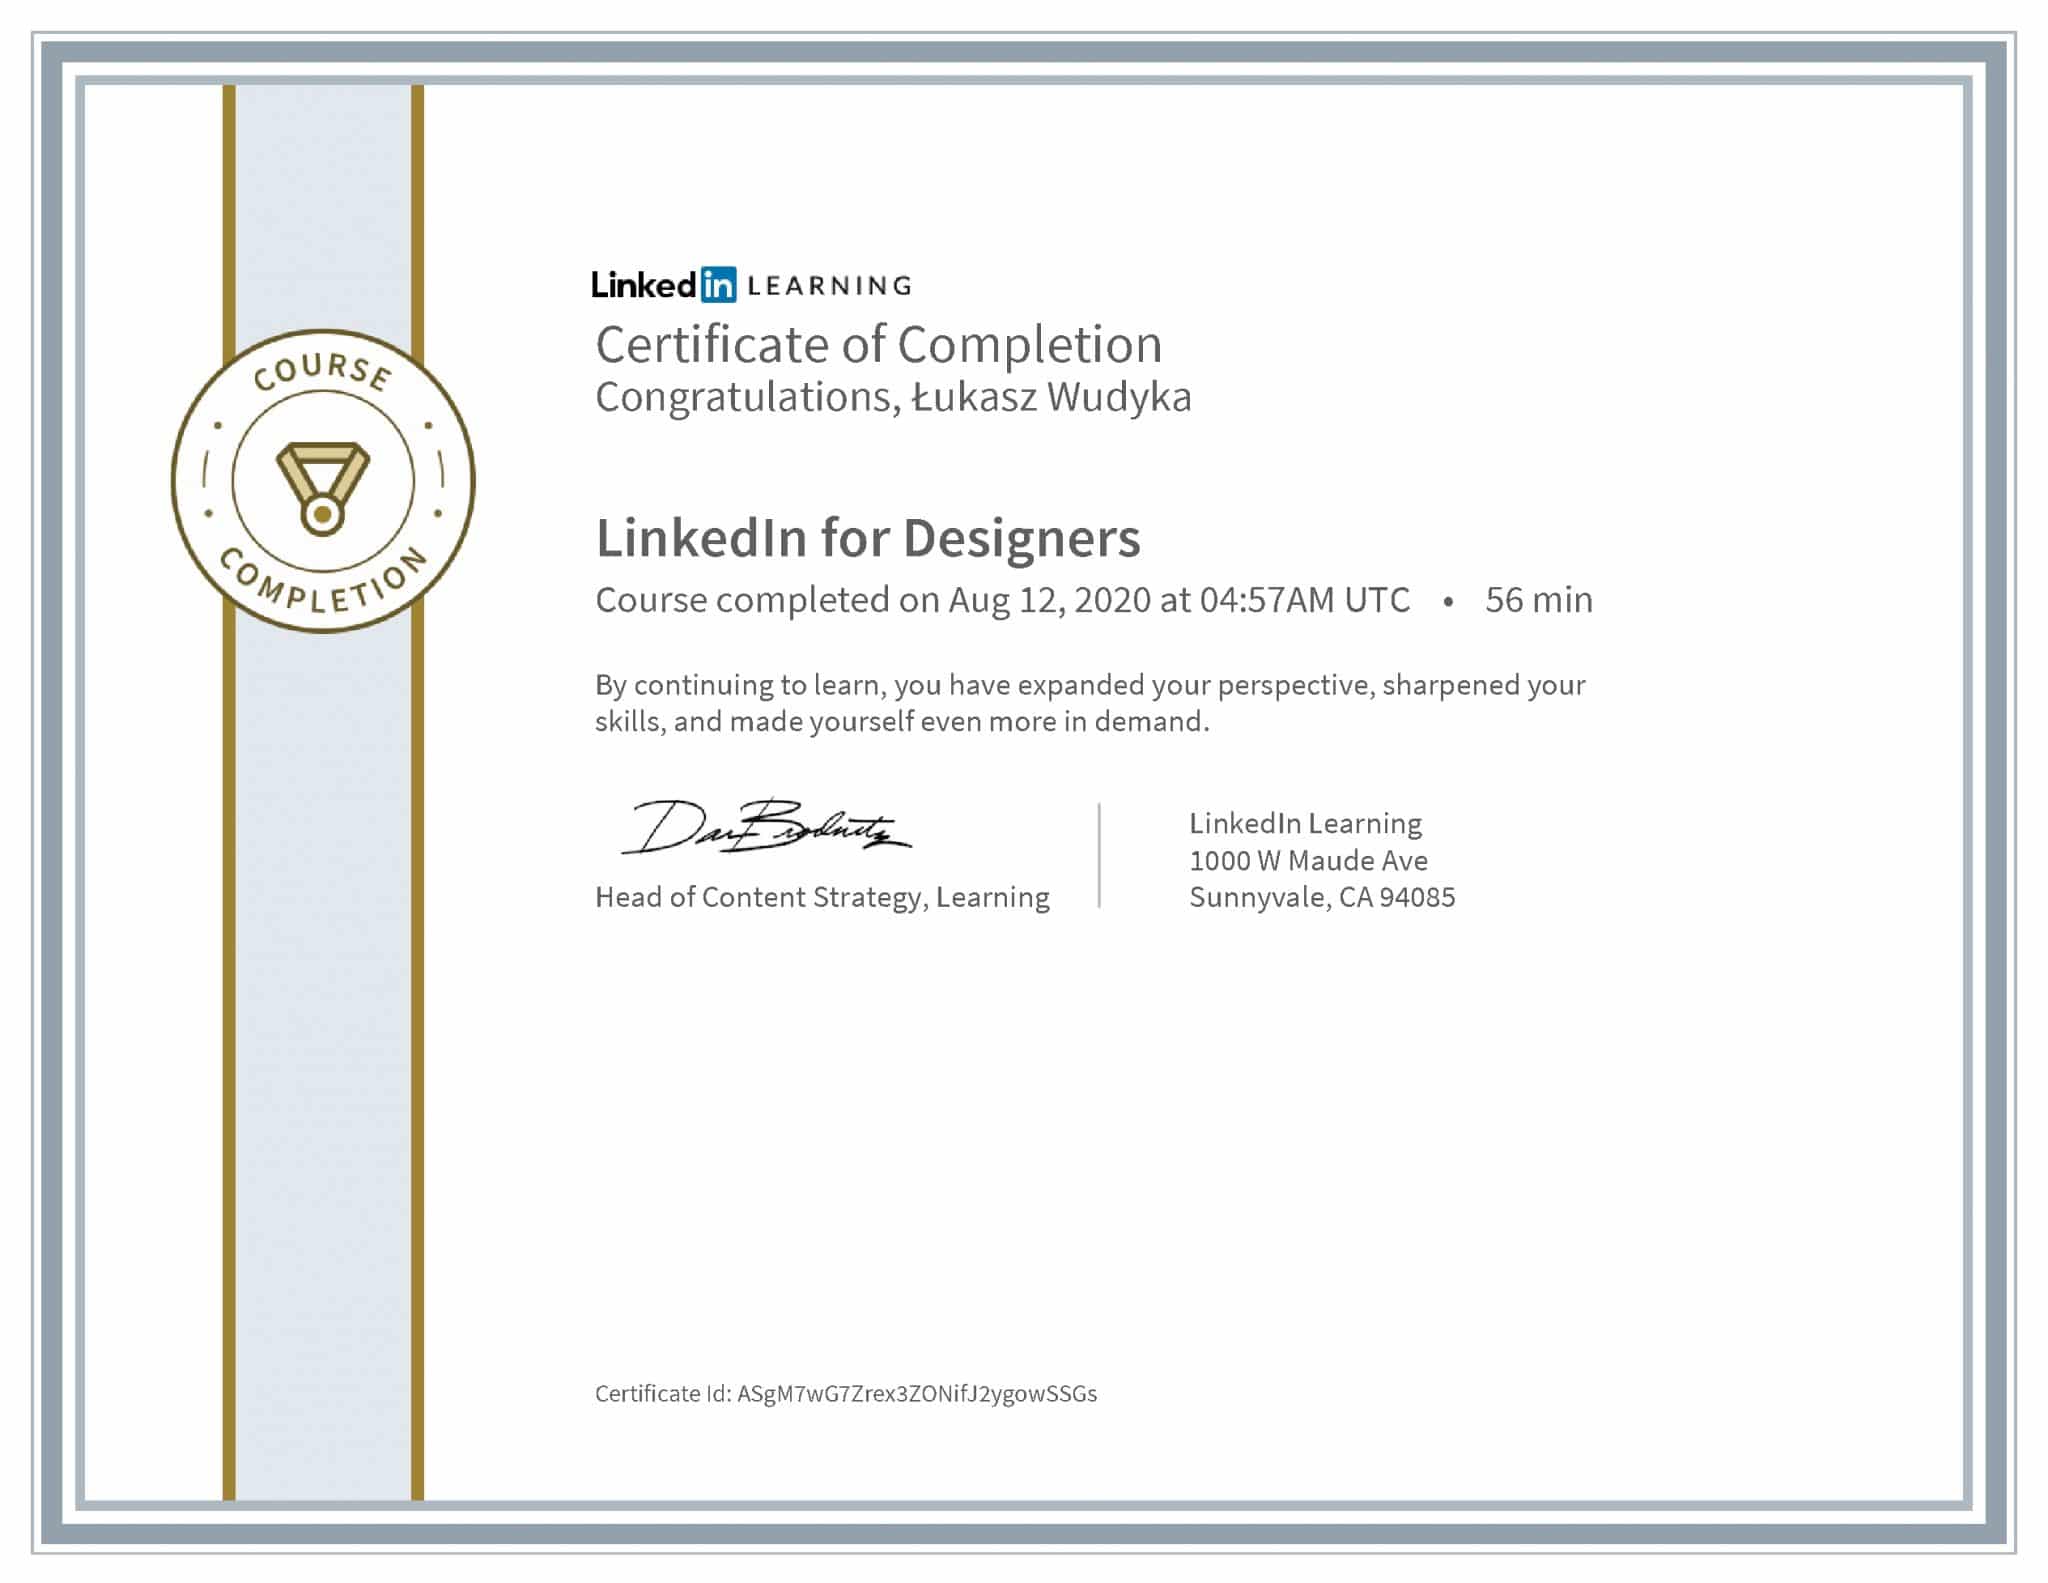 Łukasz Wudyka certyfikat LinkedIn LinkedIn for Designers